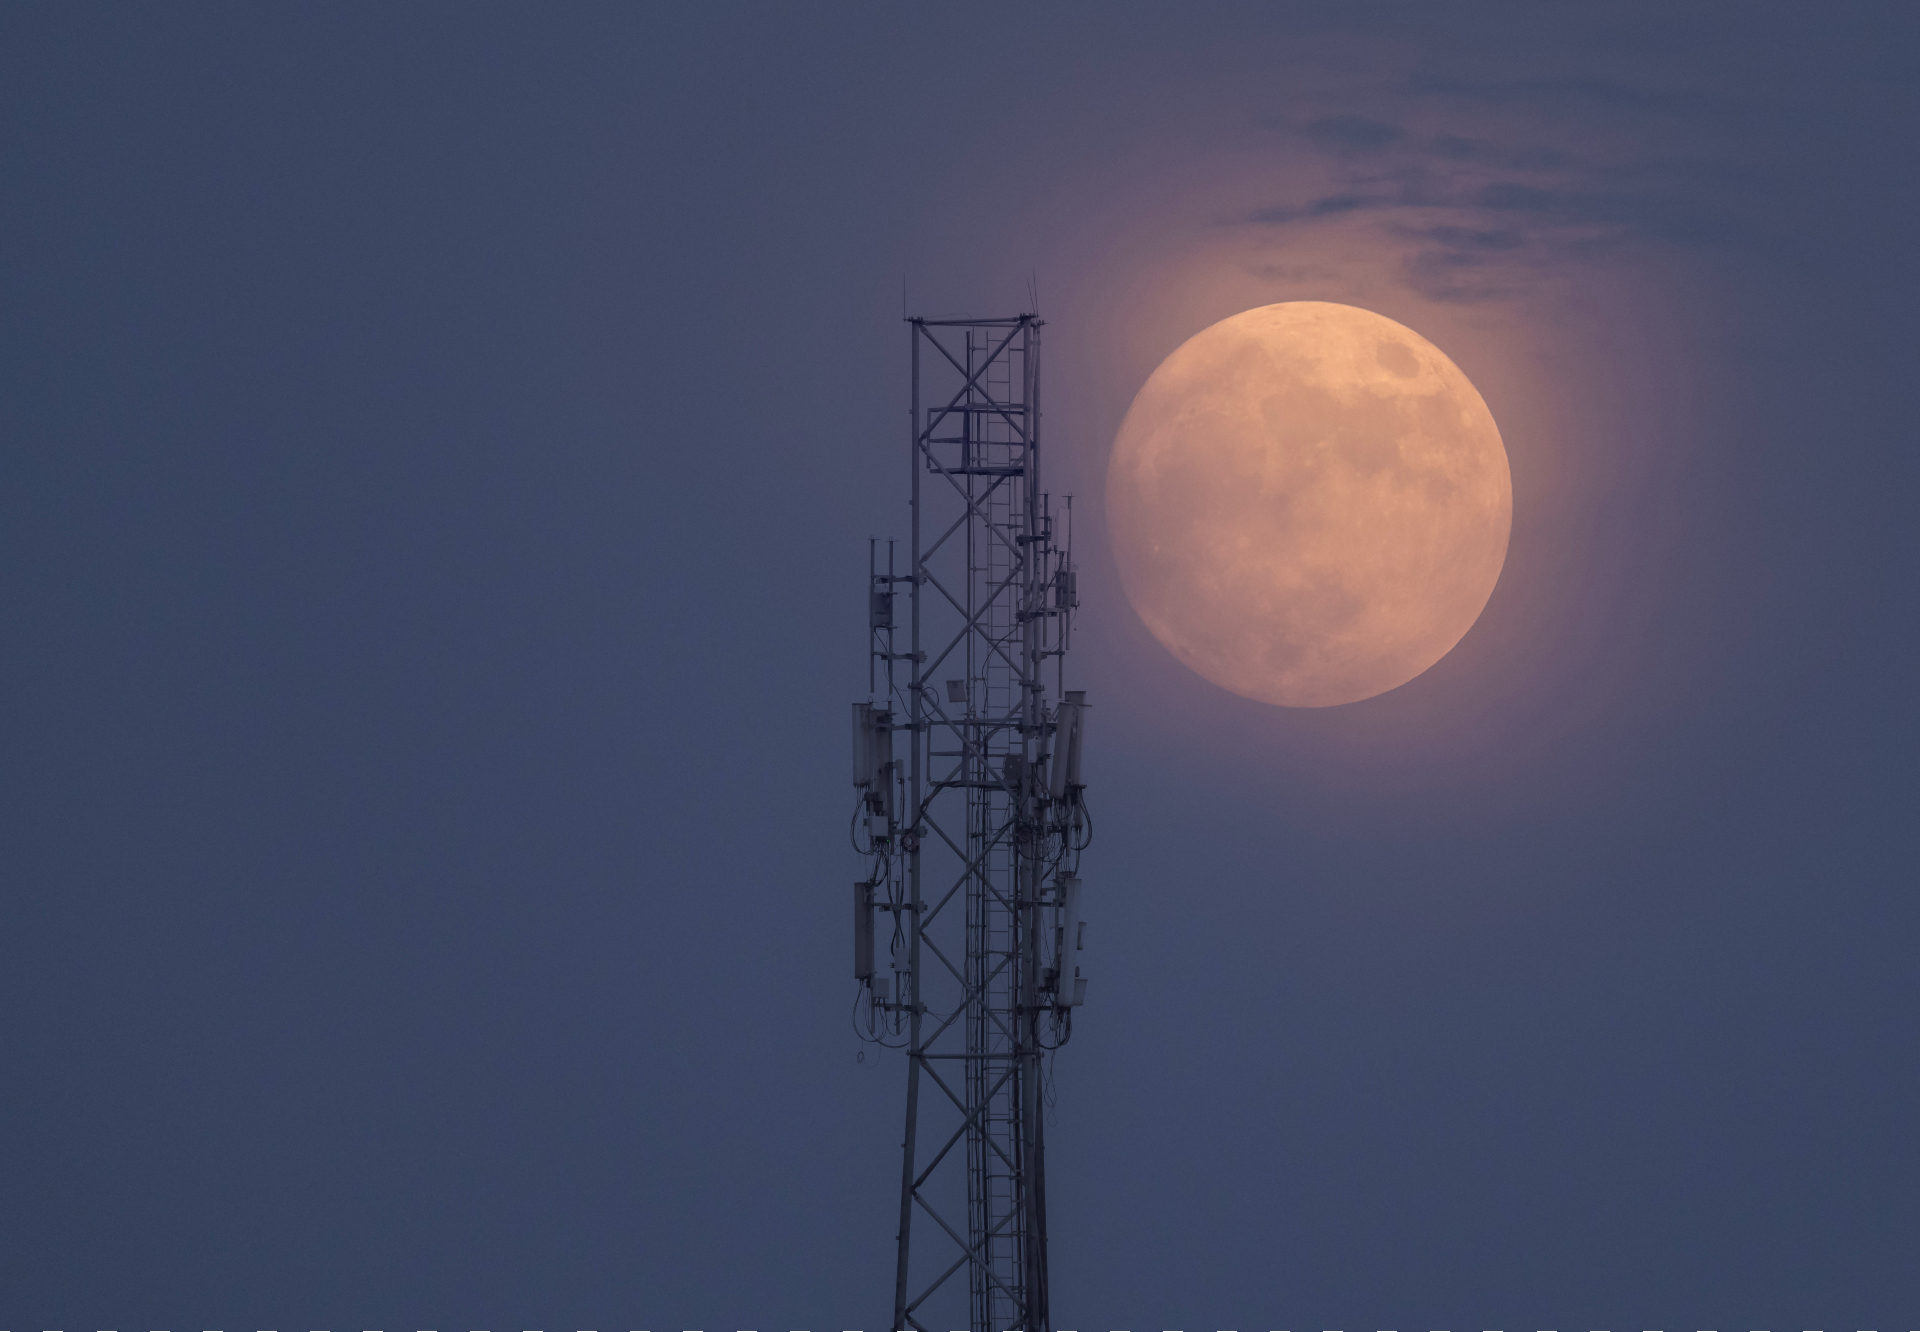 Uma lua azul gigante brilha em um tom laranja nebuloso próximo à torre.